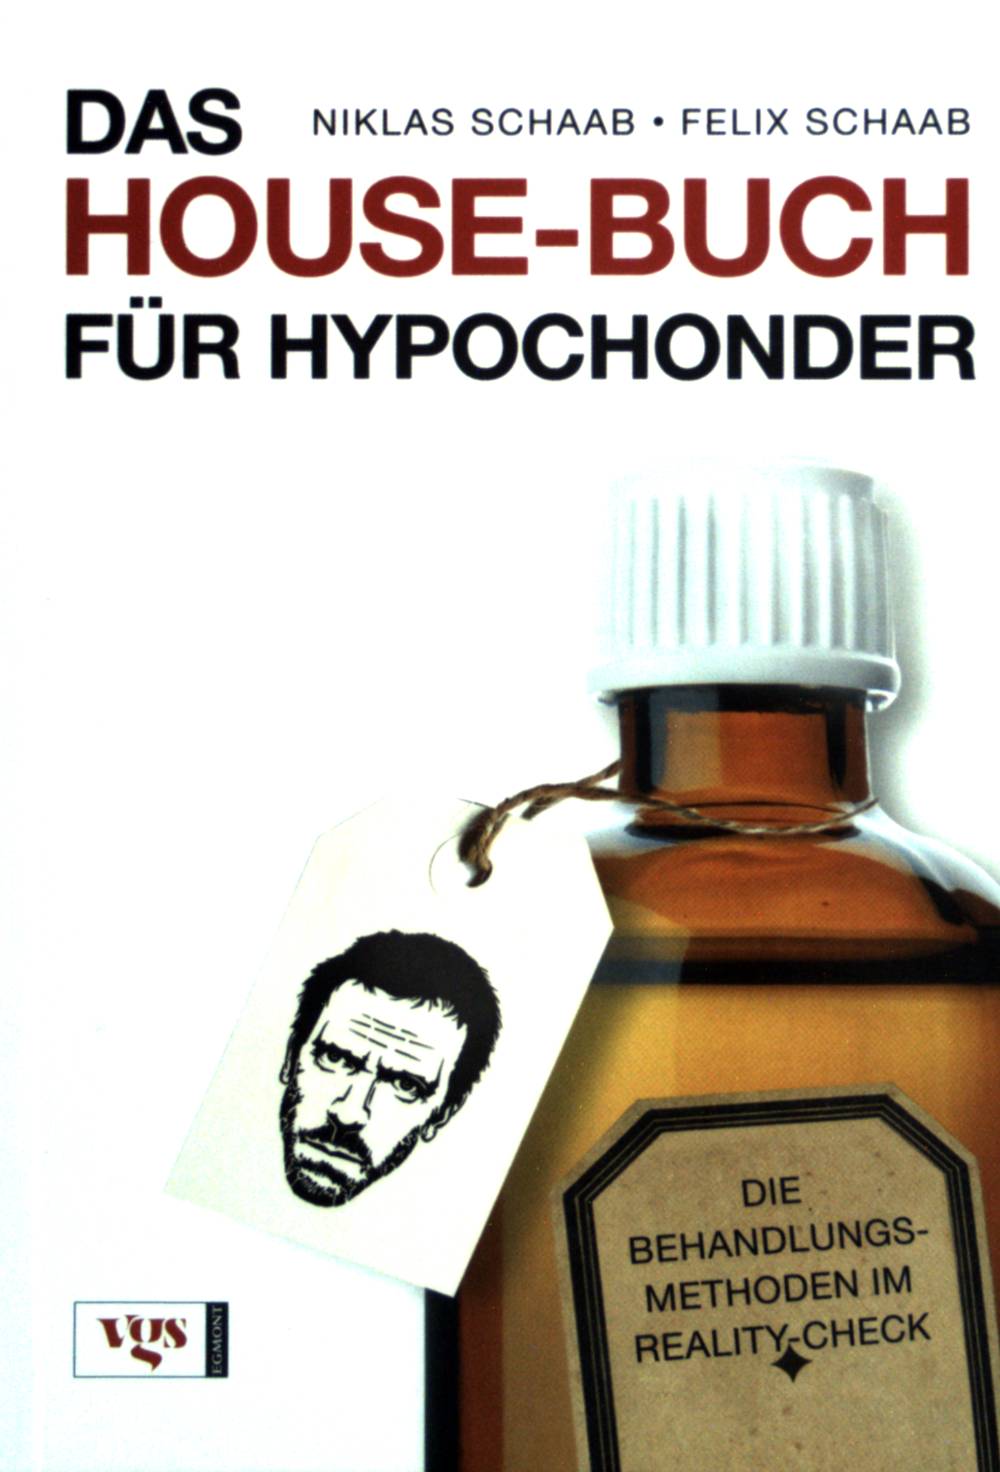 Das House-Buch für Hypochonder : die Behandlungsmethoden im Reality-Check. - Schaab, Niklas und Felix Schaab